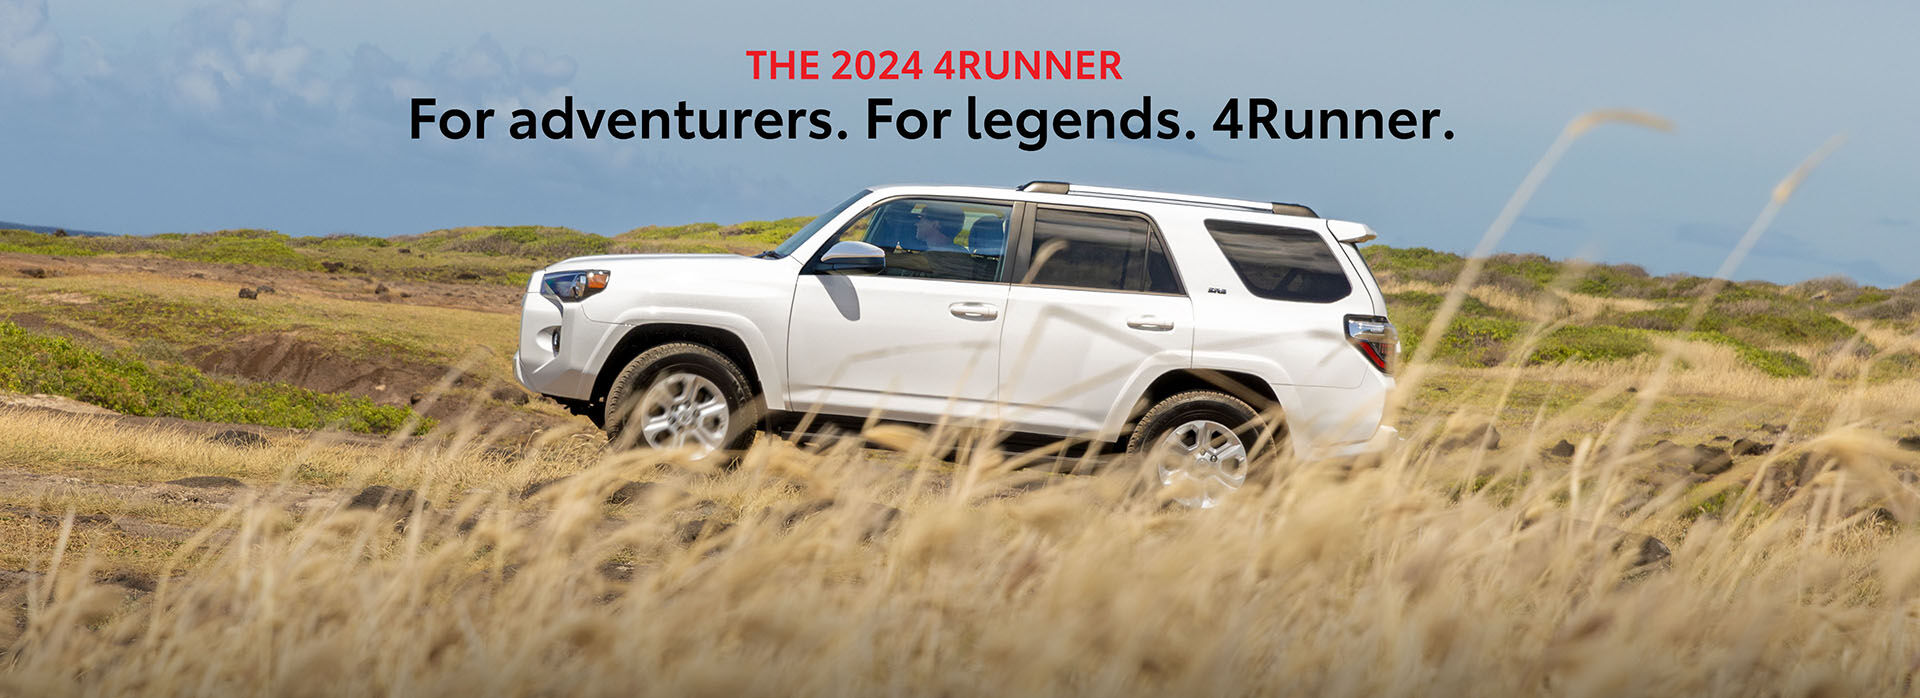 The 2024 4Runner. For Adventurers. For Legends. 4Runner.